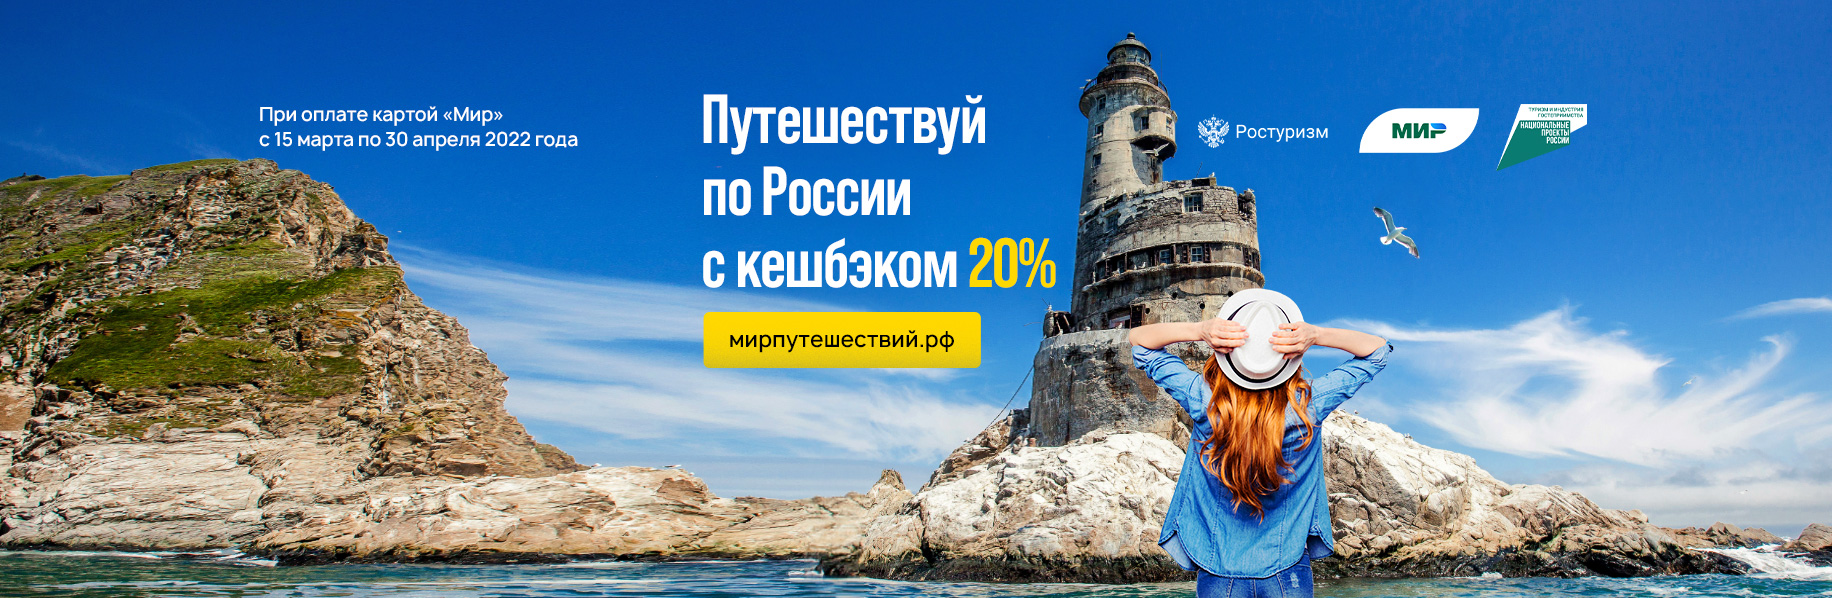 Сайт мирпутешествий рф. Туры на море по России 2022.